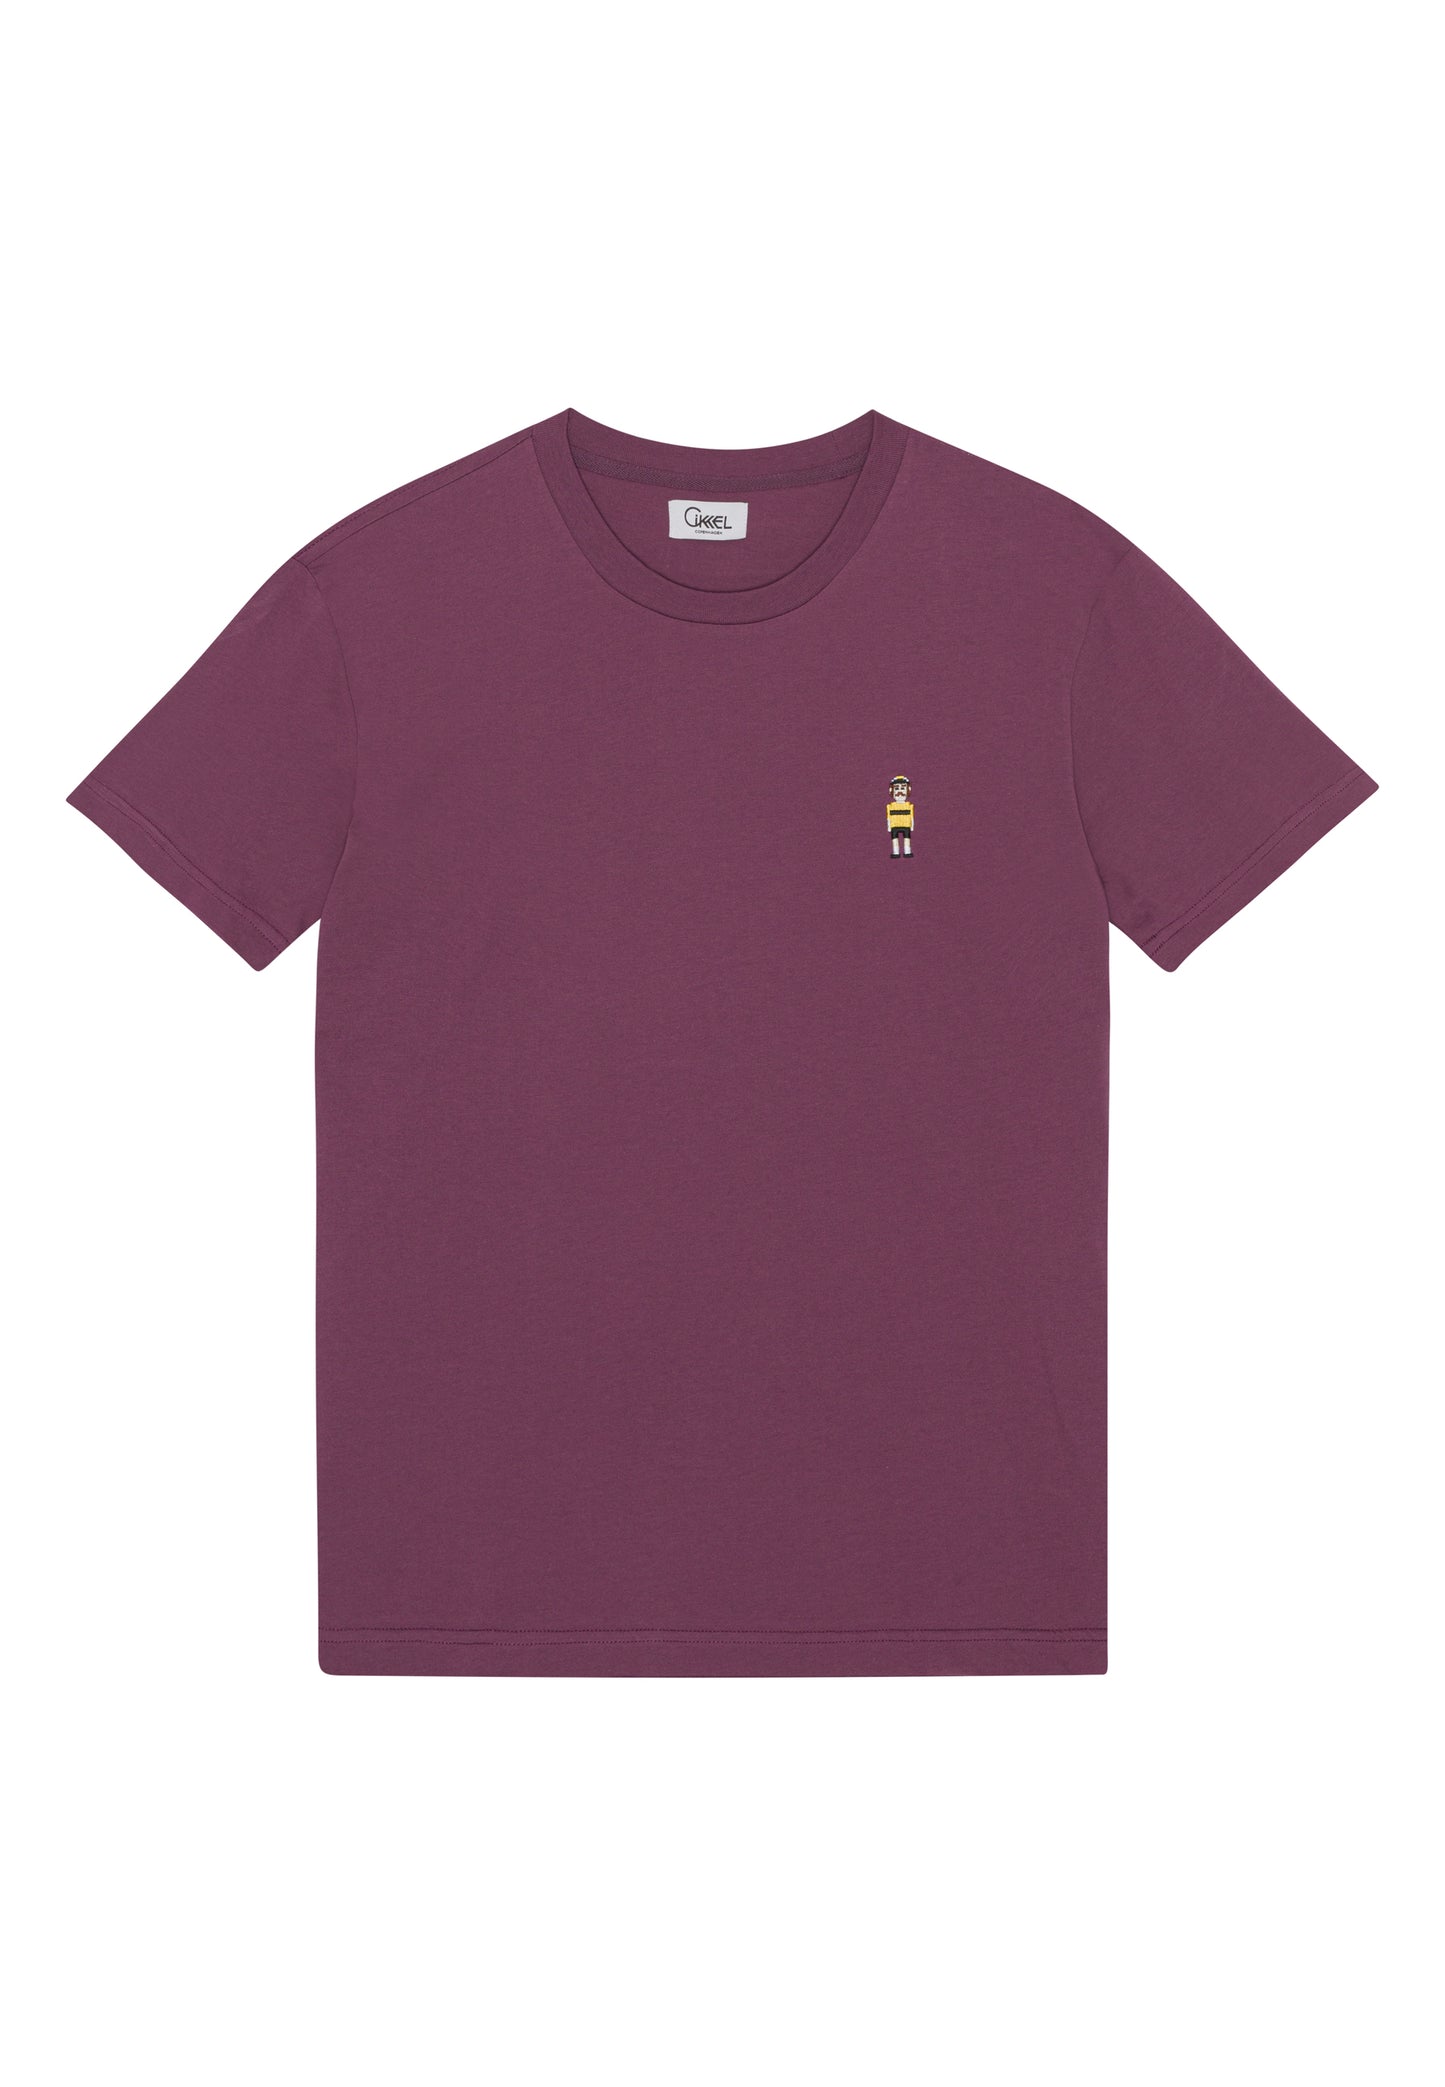 oTTo mascot - T-Shirt Burgundy